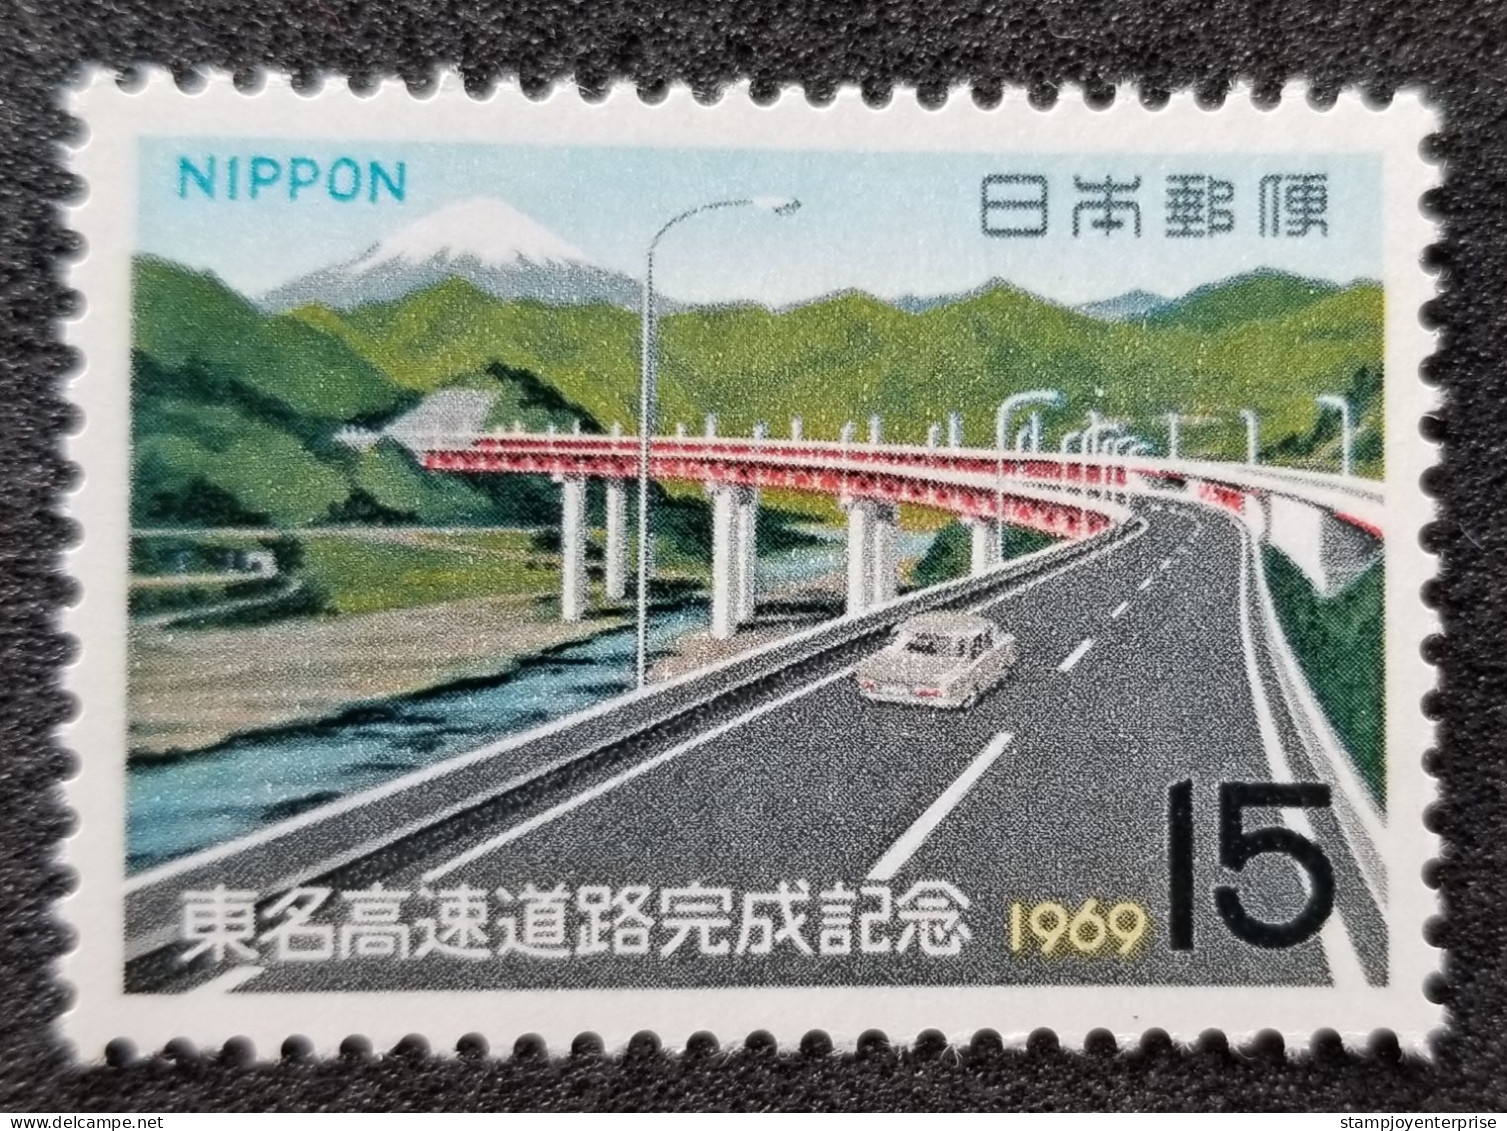 Japan Completion Of Tokyo Nagoya Expressway 1969 Road Car Highway (stamp) MNH - Nuovi